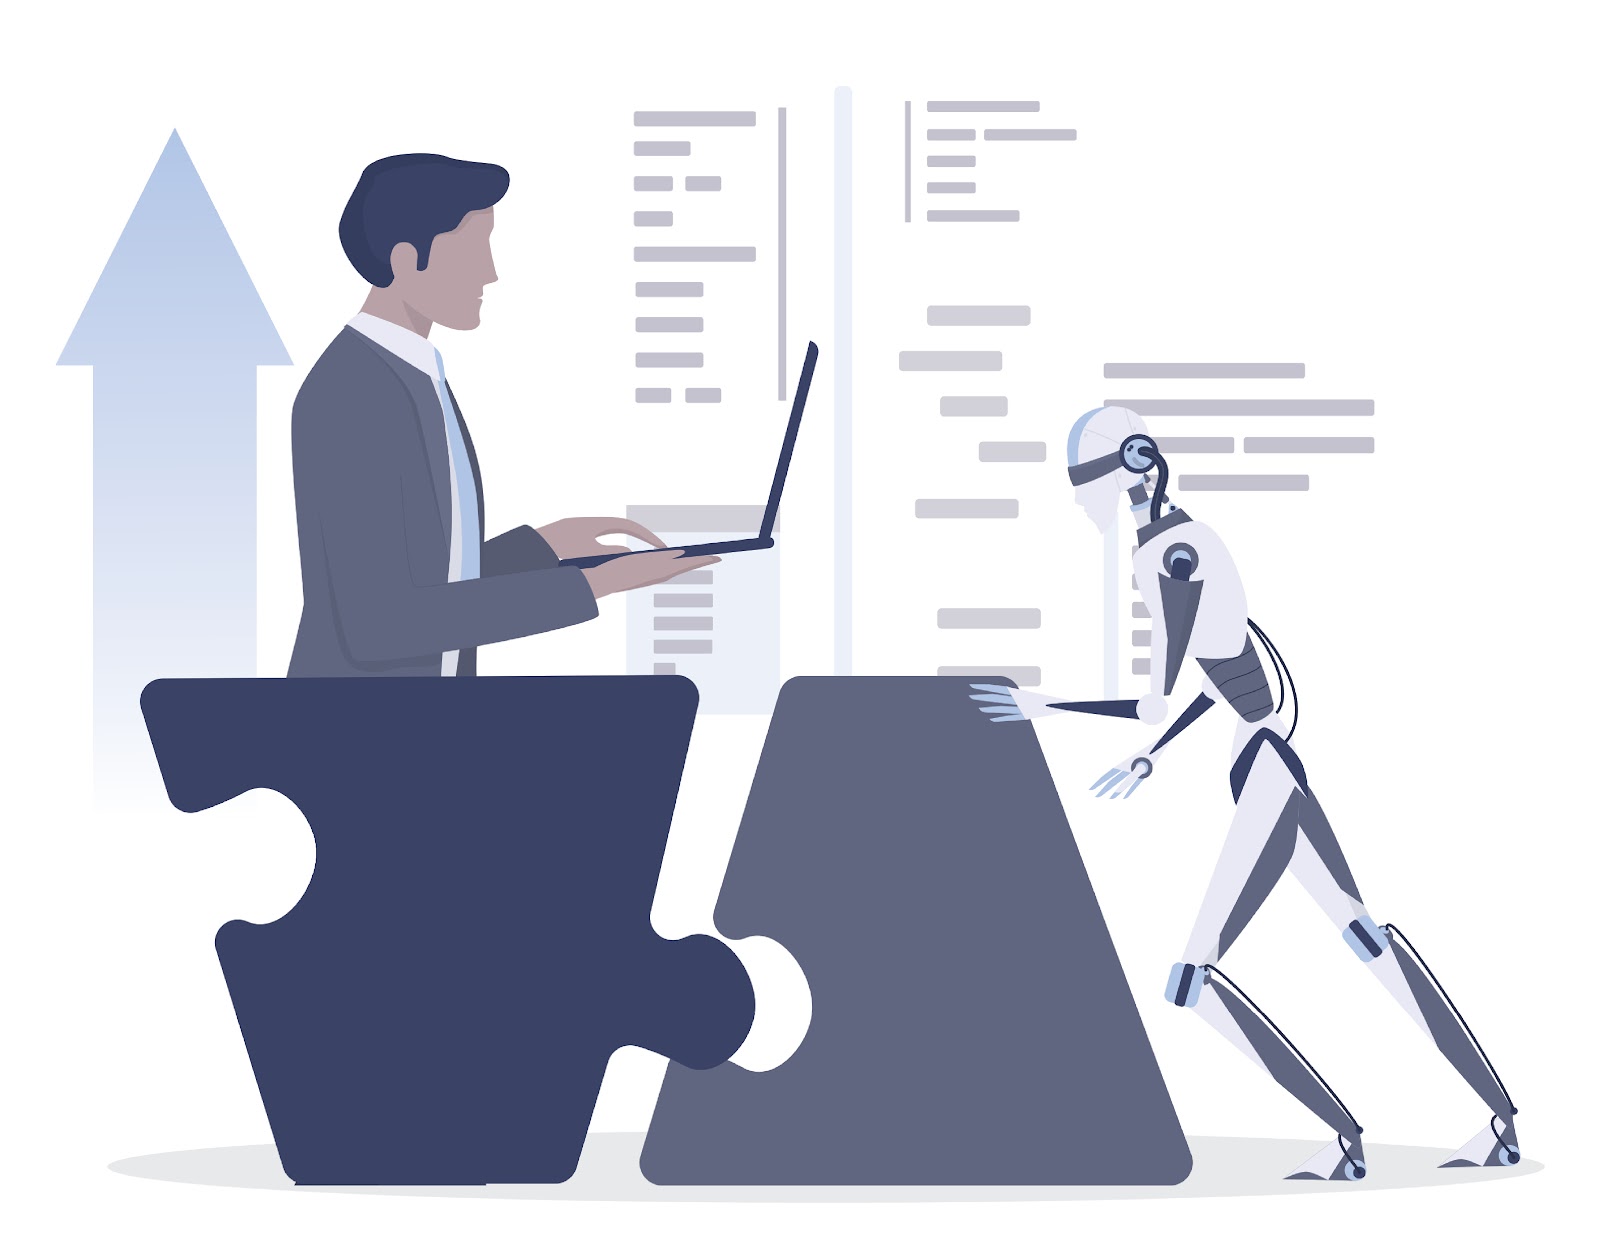 Imagem criada digitalmente por meio de vetores na qual um homem vestido de terno segura um notebook, enquanto vemos um robô caminhando em sua direção, ilustrando a importância dos avanços tecnológicos para software de gestão.